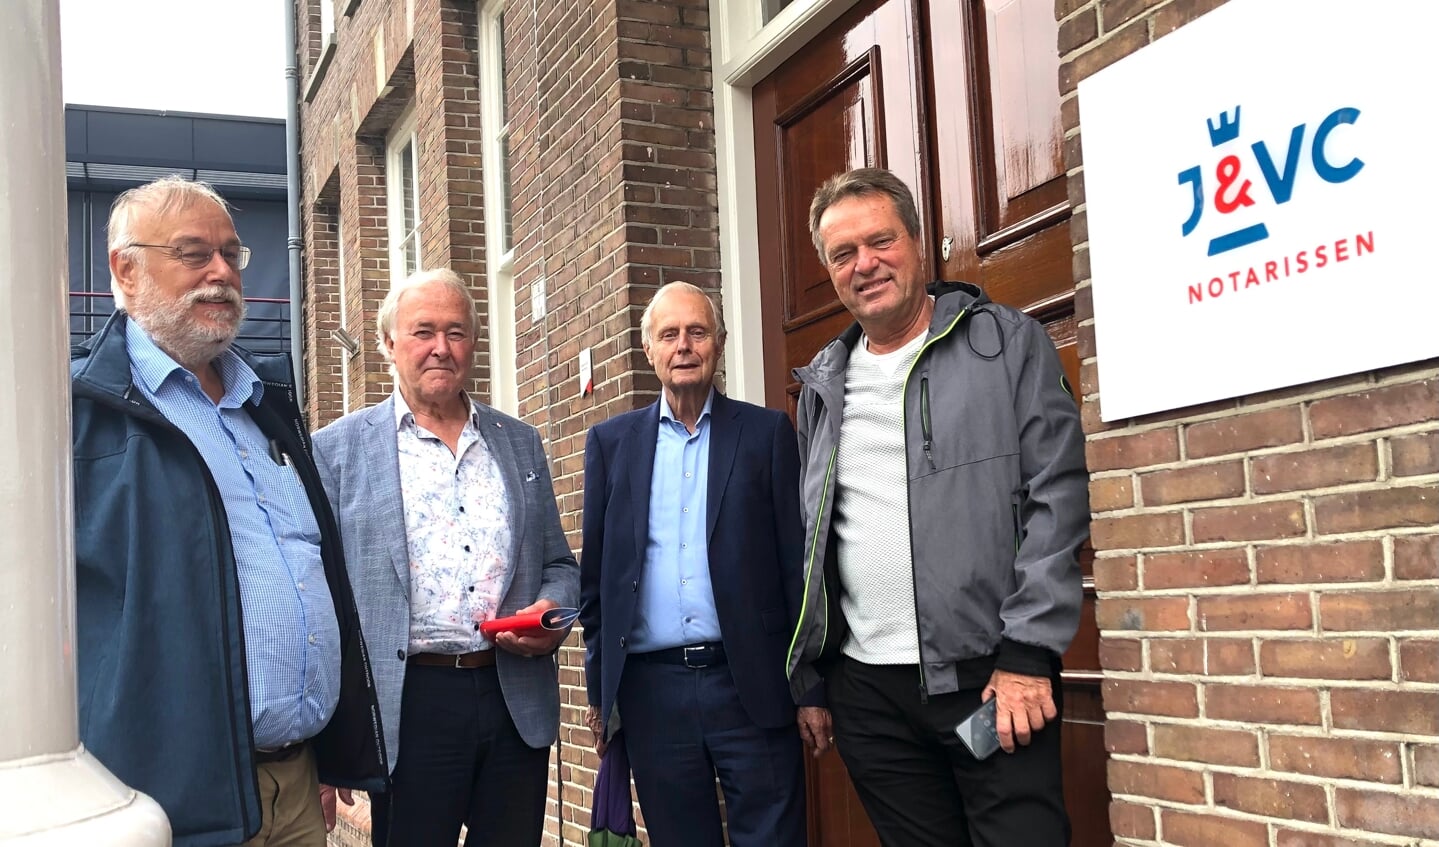 Het stichtingsbestuur (vlnr):Wim Moonen (penningmeester), Adrie Winkelaar (secretaris)  Bertus Berghuis (adviseer en raadsman) en Luuk Klaassen (voorzitter).